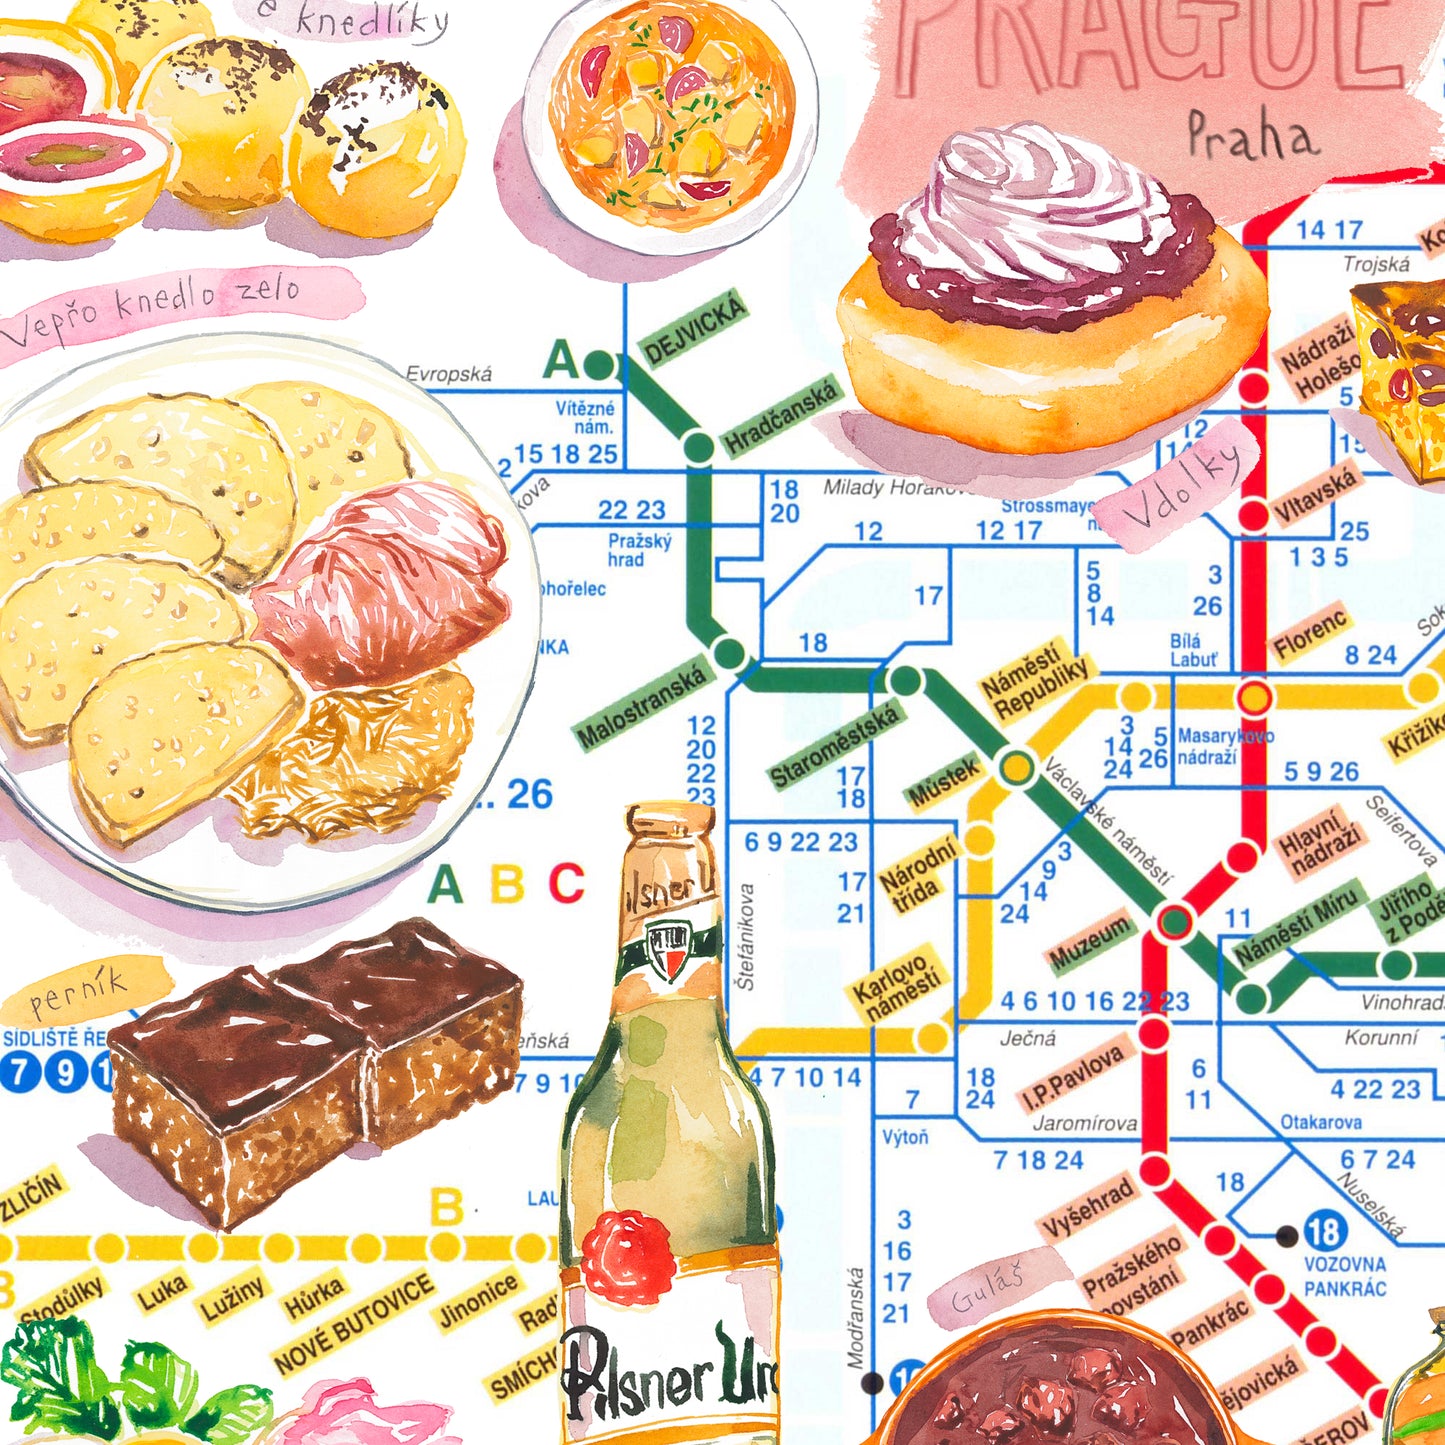 Plan du Métro de Prague illustré par la Cuisine Tchèque